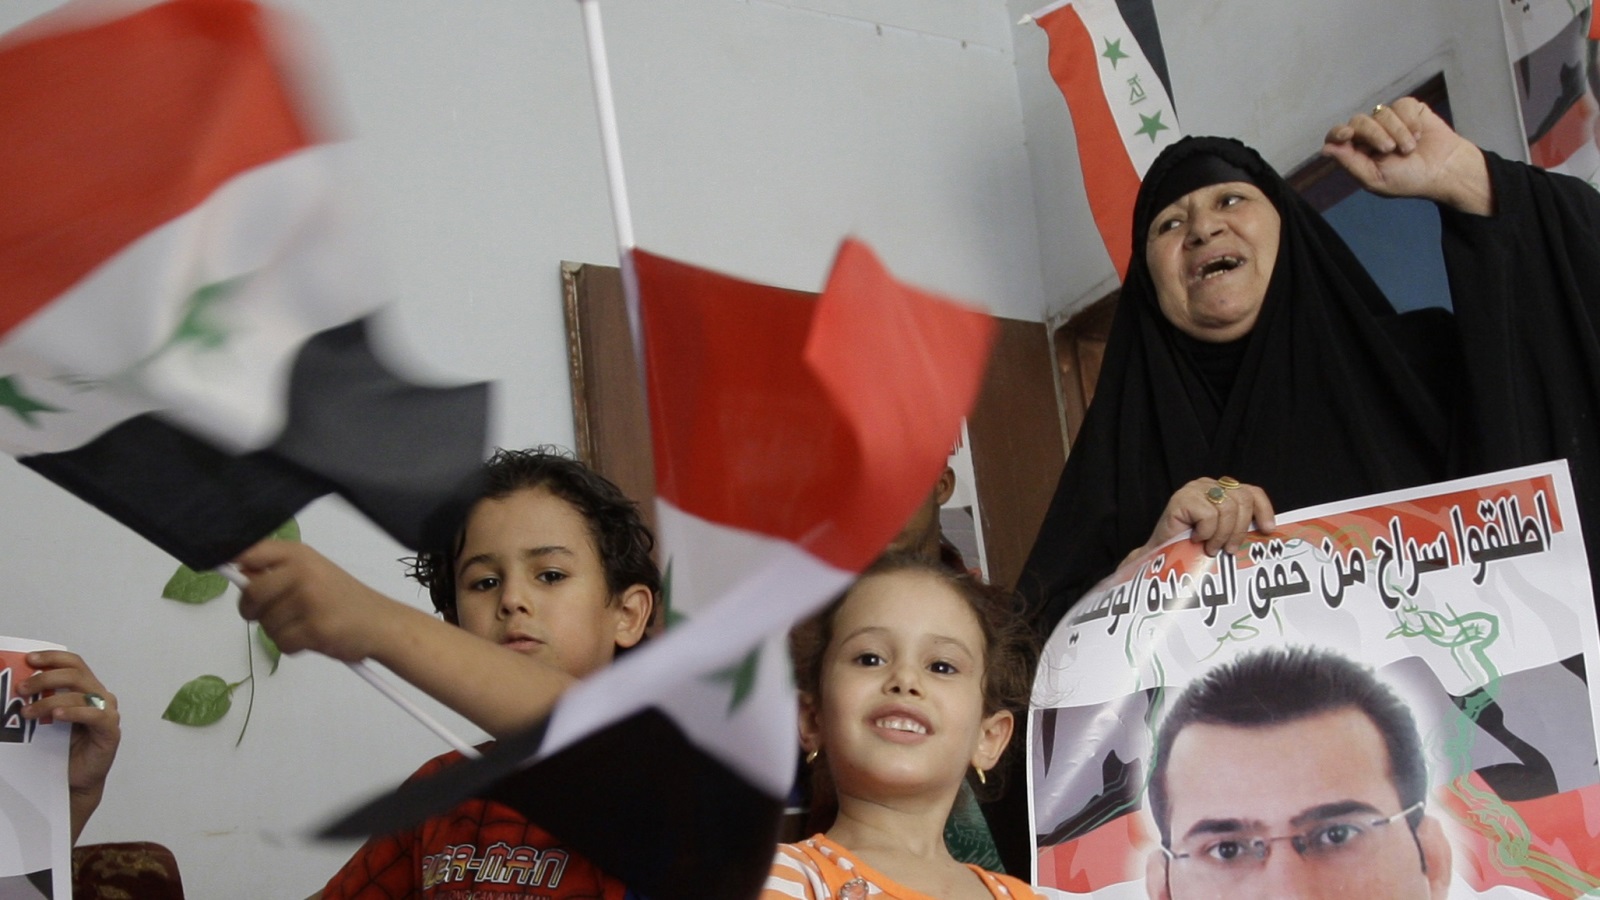 ‪أسرة الزيدي تحتفل في منزله قبل إطلاق سراحه بعد اعتقاله‬ أسرة الزيدي تحتفل في منزله قبل إطلاق سراحه بعد اعتقاله (رويترز)